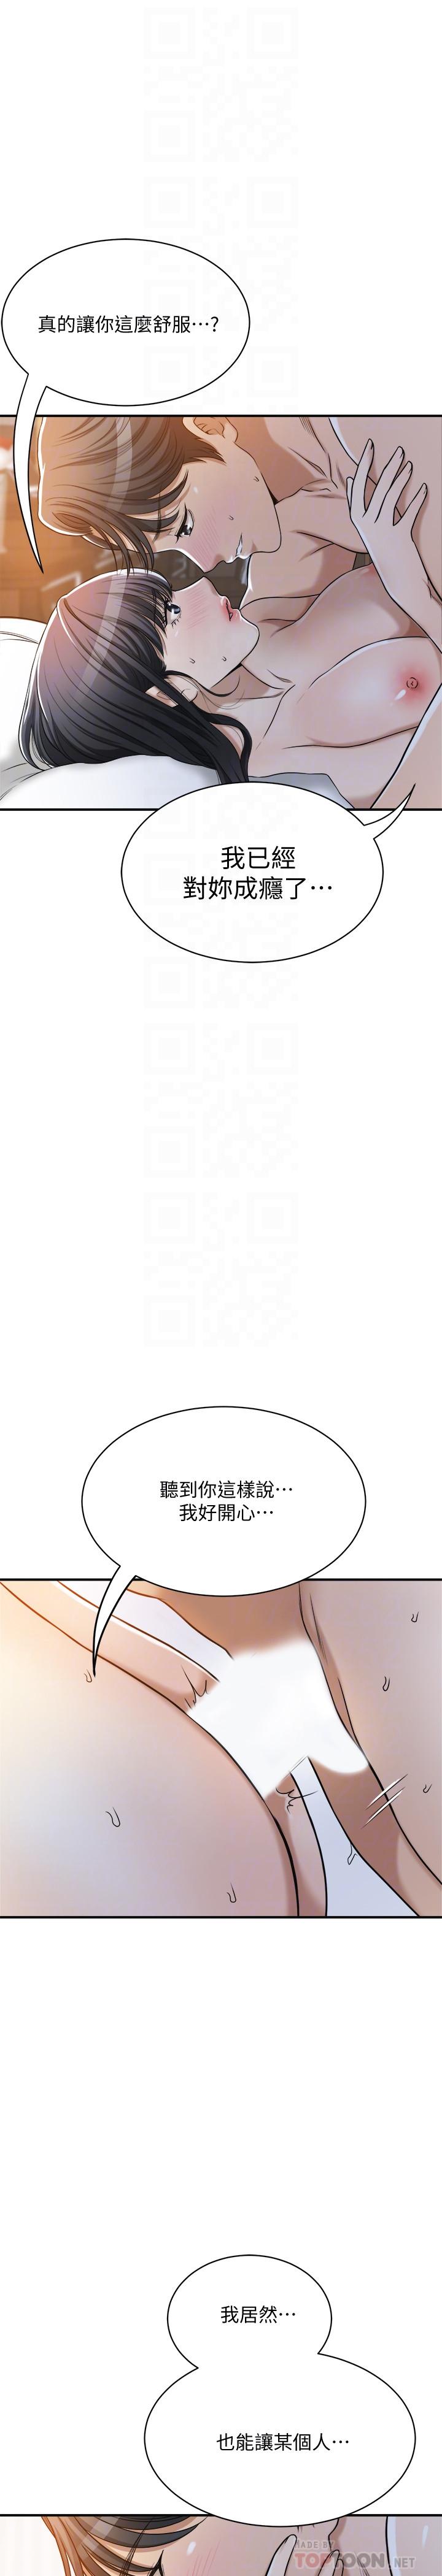 抑欲人妻漫画 免费阅读 第23话-疯狂抽插筱妍的诱人胴体 18.jpg